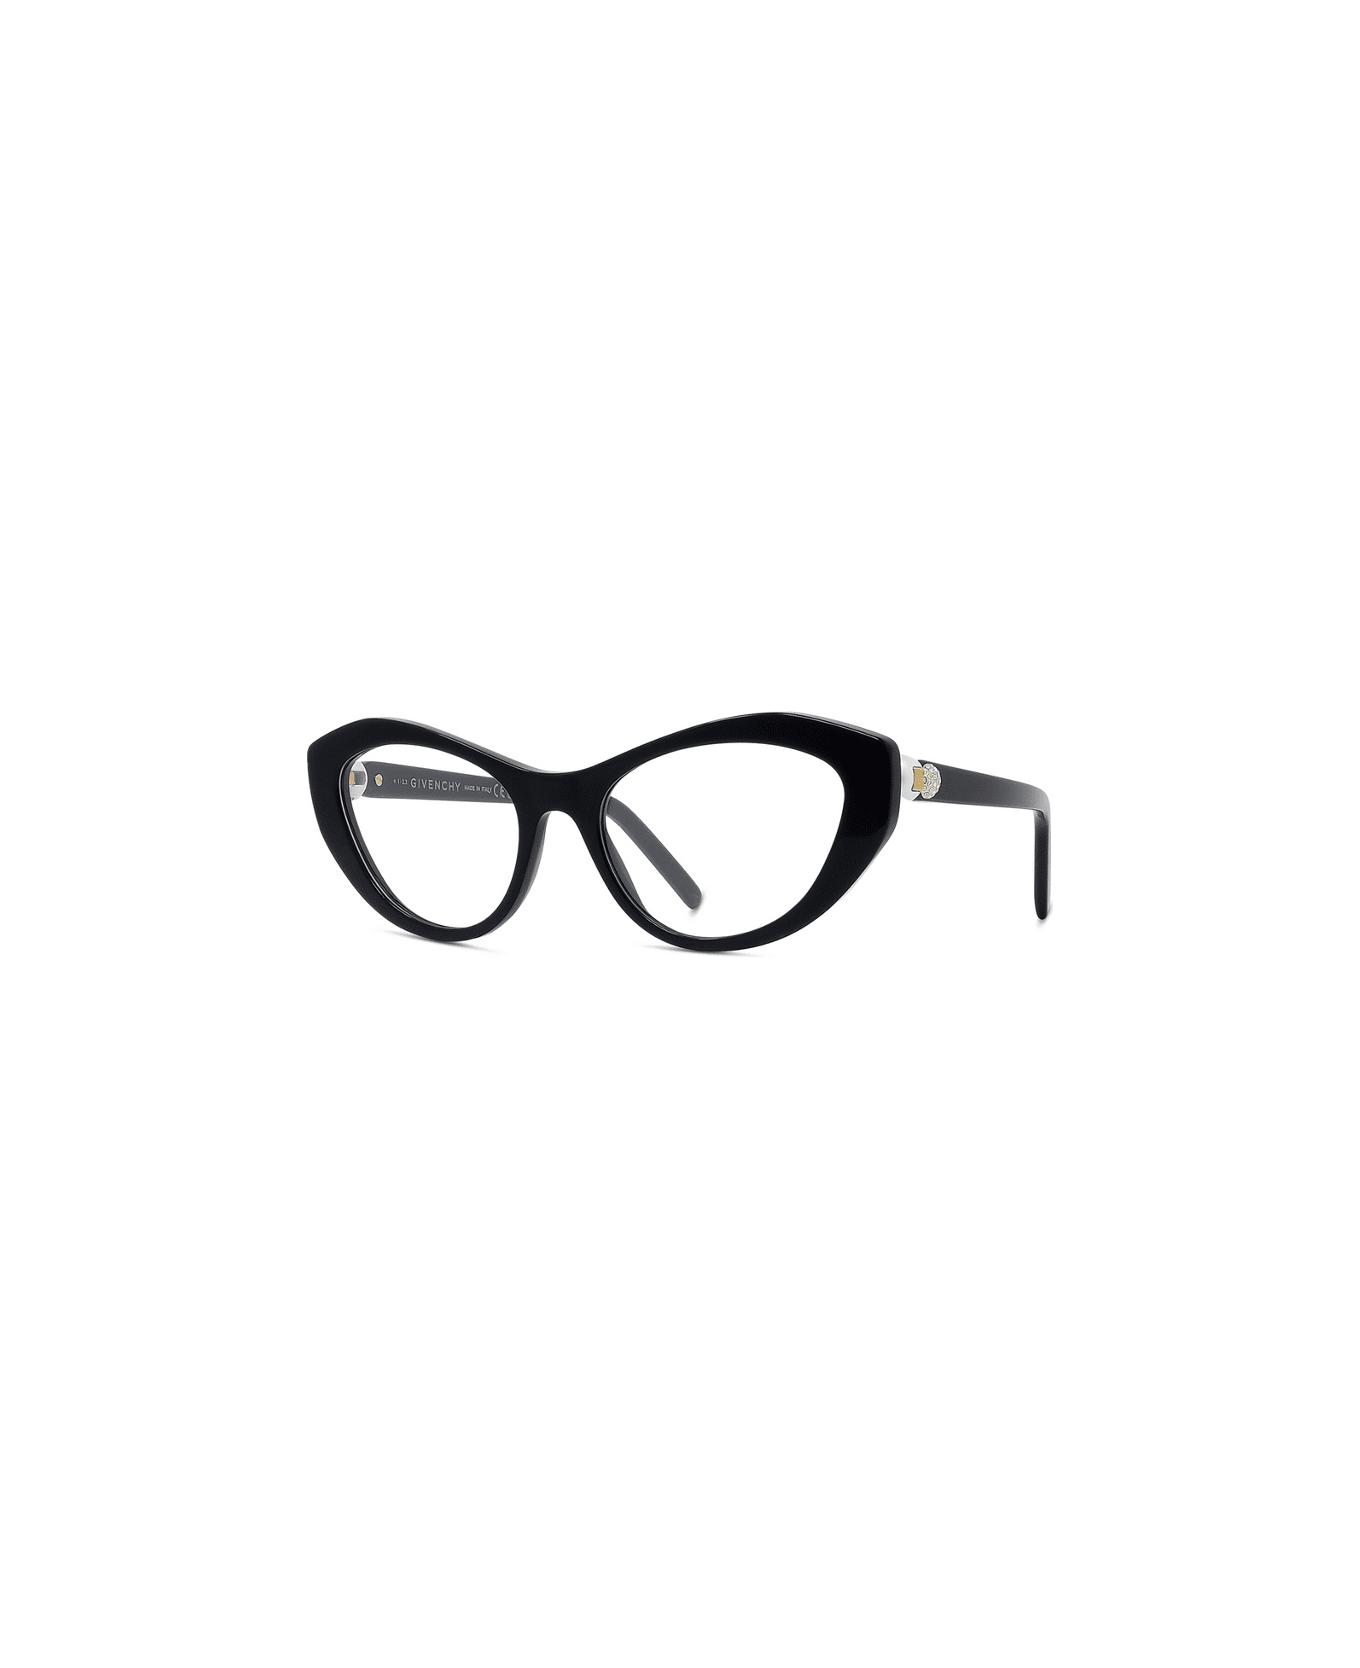 Givenchy Eyewear Gv50046i 001 Glasses